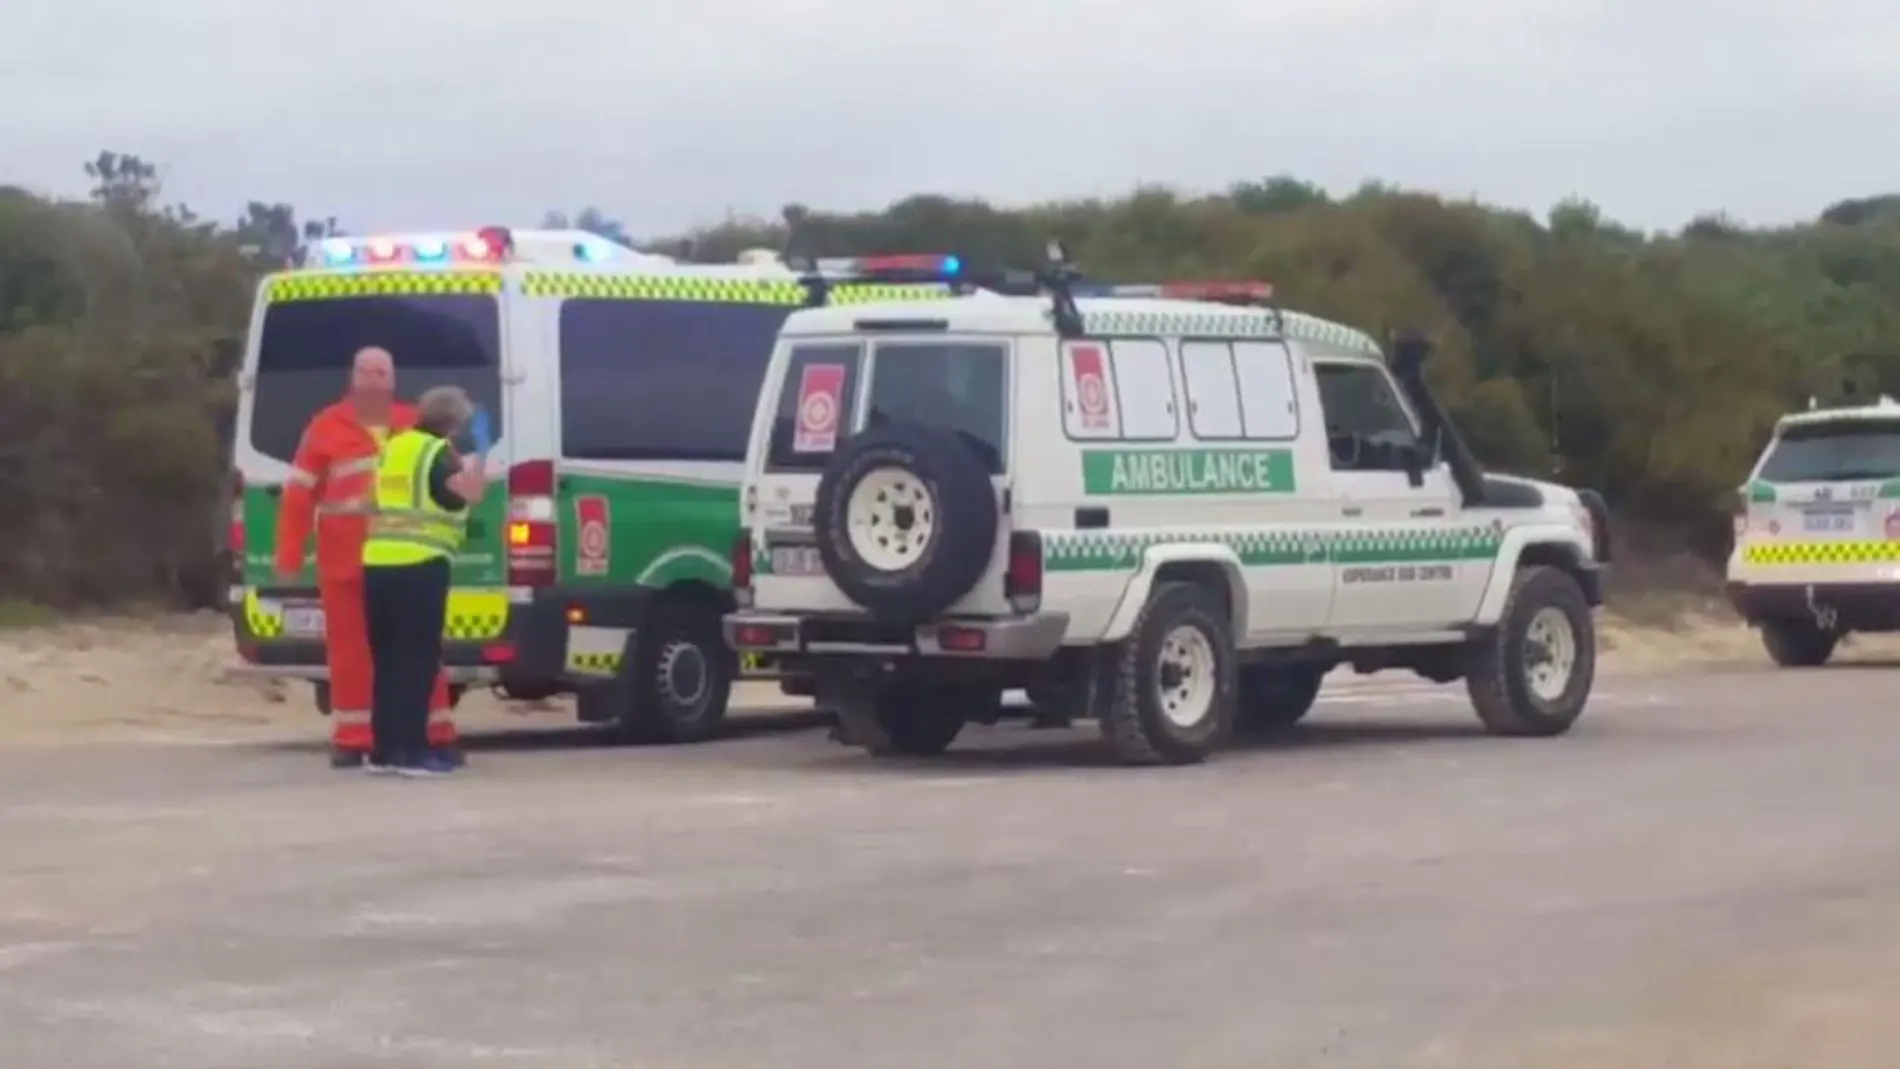 Imagen de la ambulancia en la que la víctima fue trasladada al hospital de Esperance